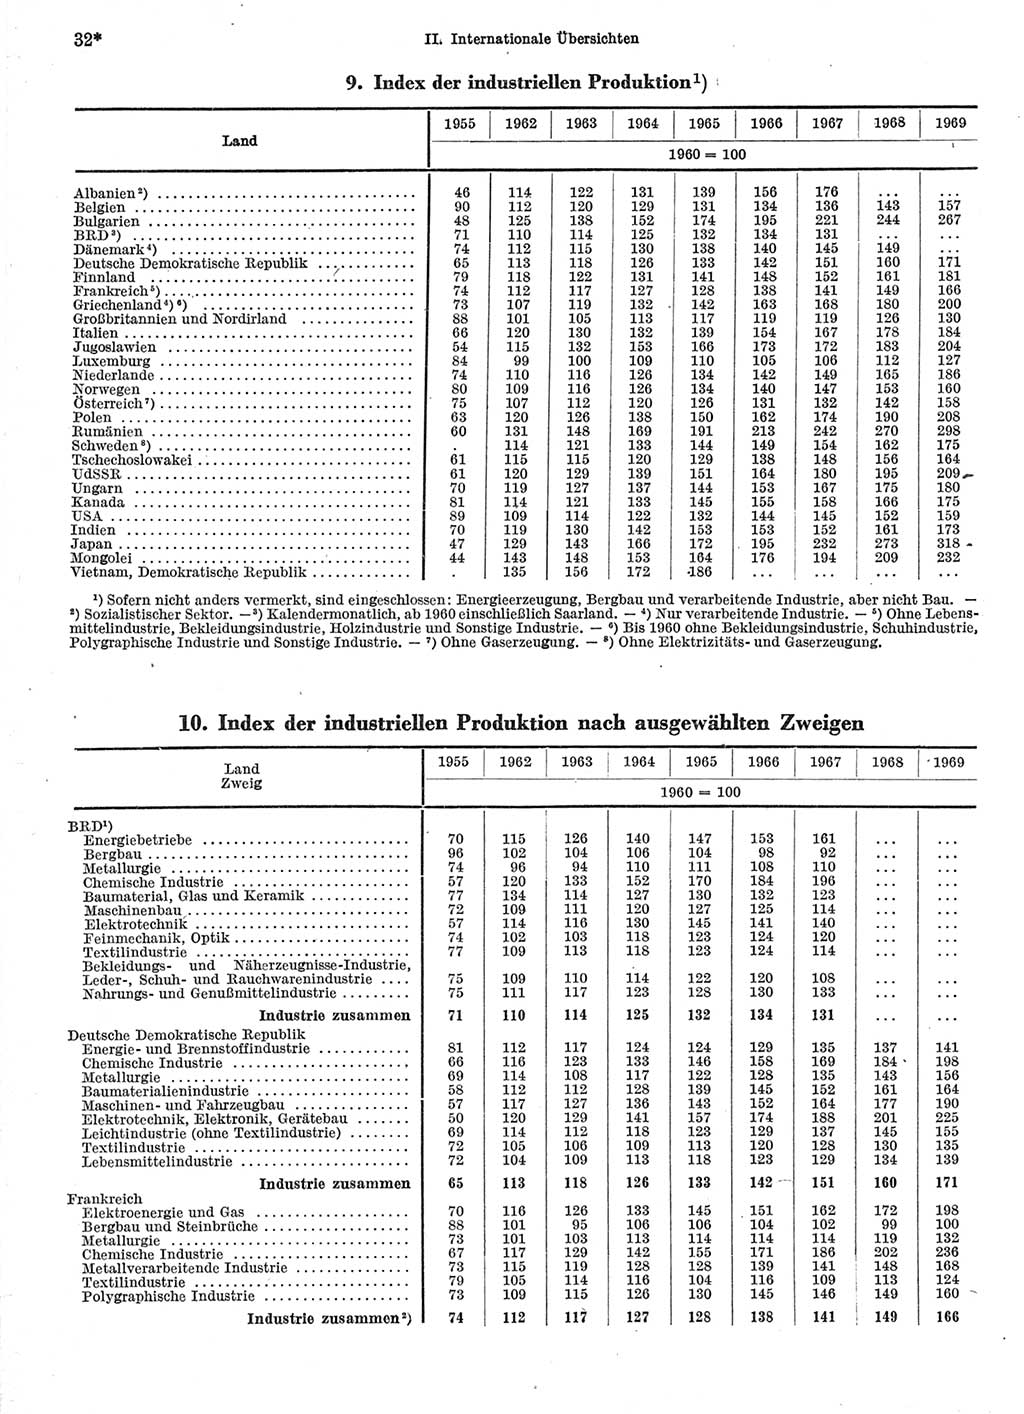 Statistisches Jahrbuch der Deutschen Demokratischen Republik (DDR) 1971, Seite 32 (Stat. Jb. DDR 1971, S. 32)